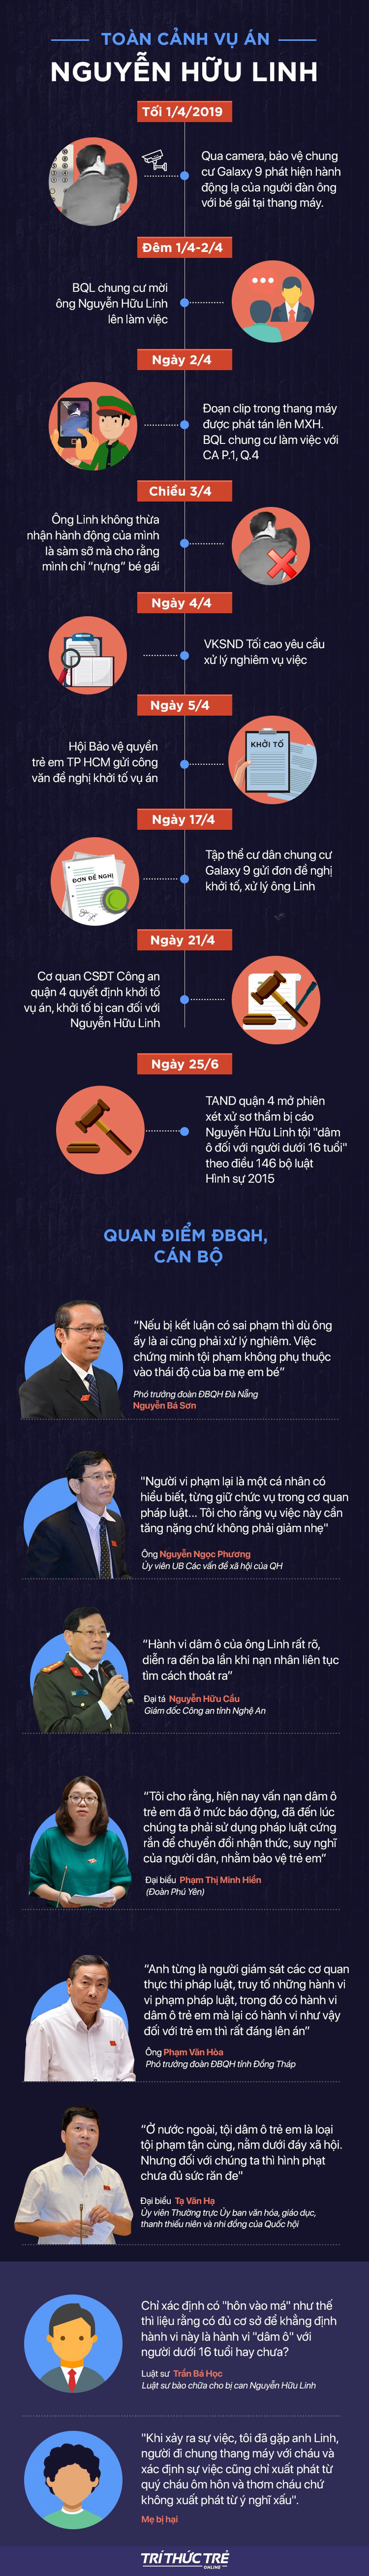 [Infographic] Toàn cảnh vụ án Nguyễn Hữu Linh trước ngày xét xử kín - Ảnh 1.